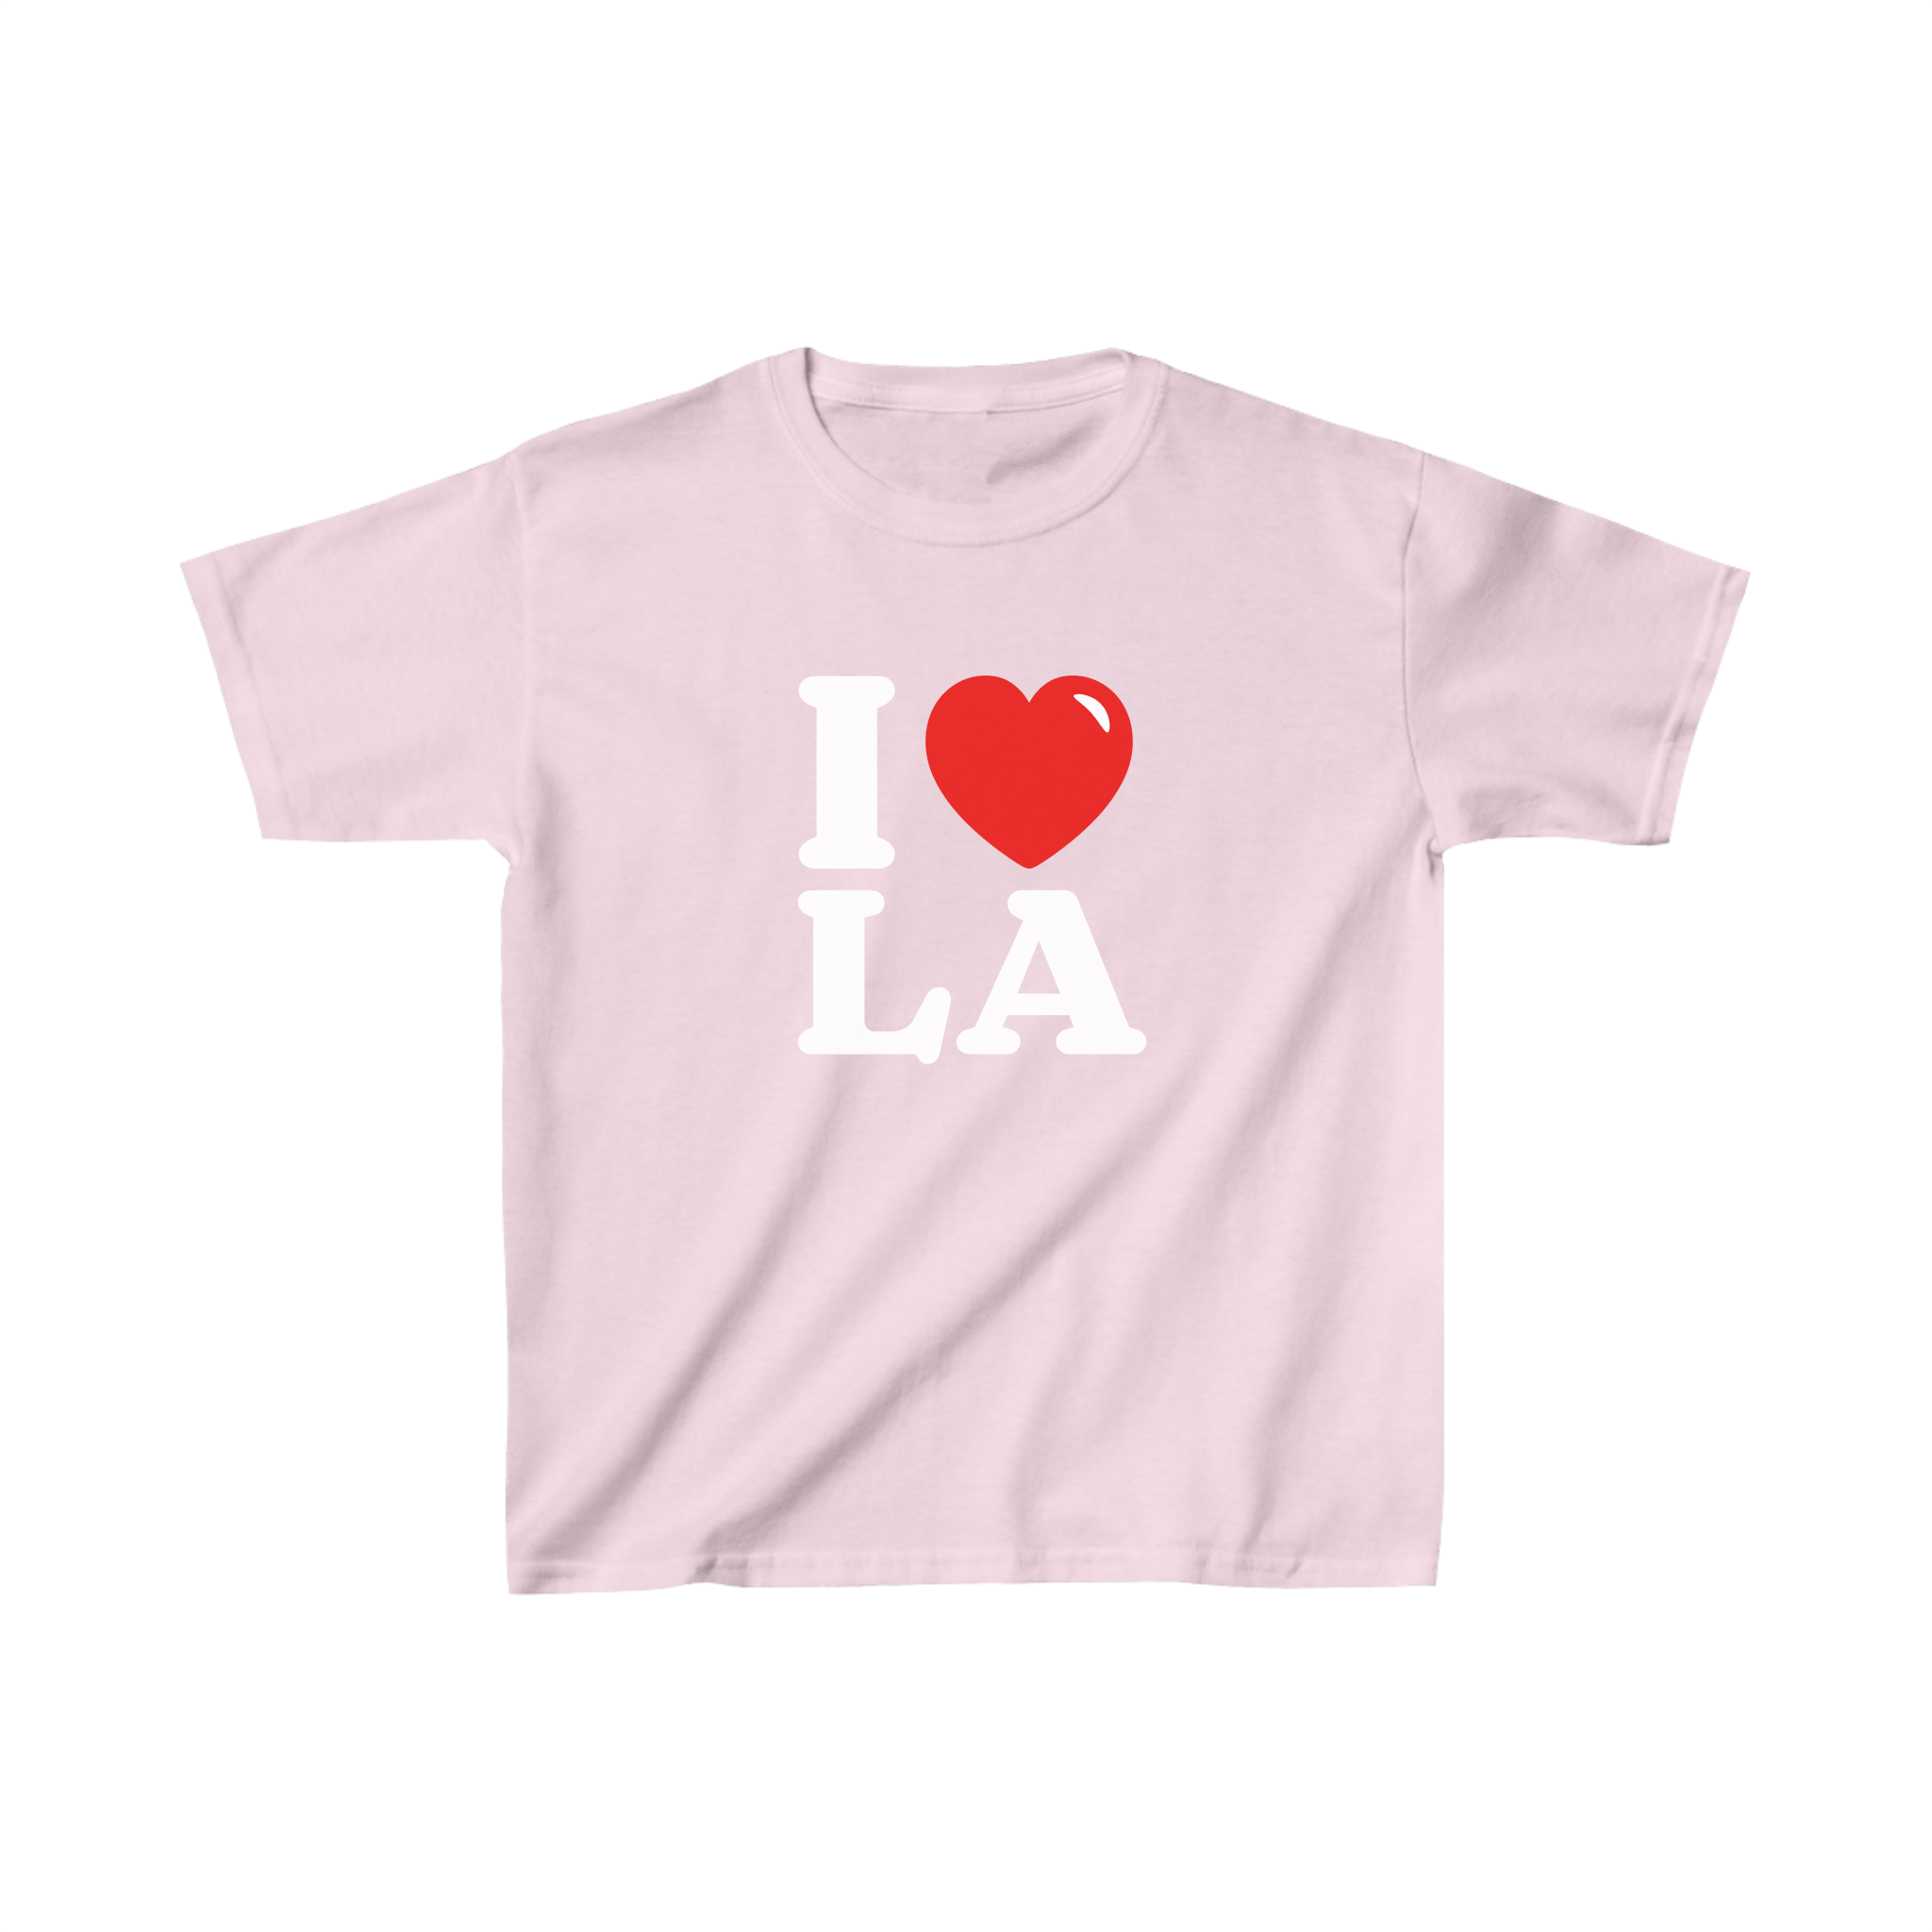 'I love LA' baby tee - In Print We Trust